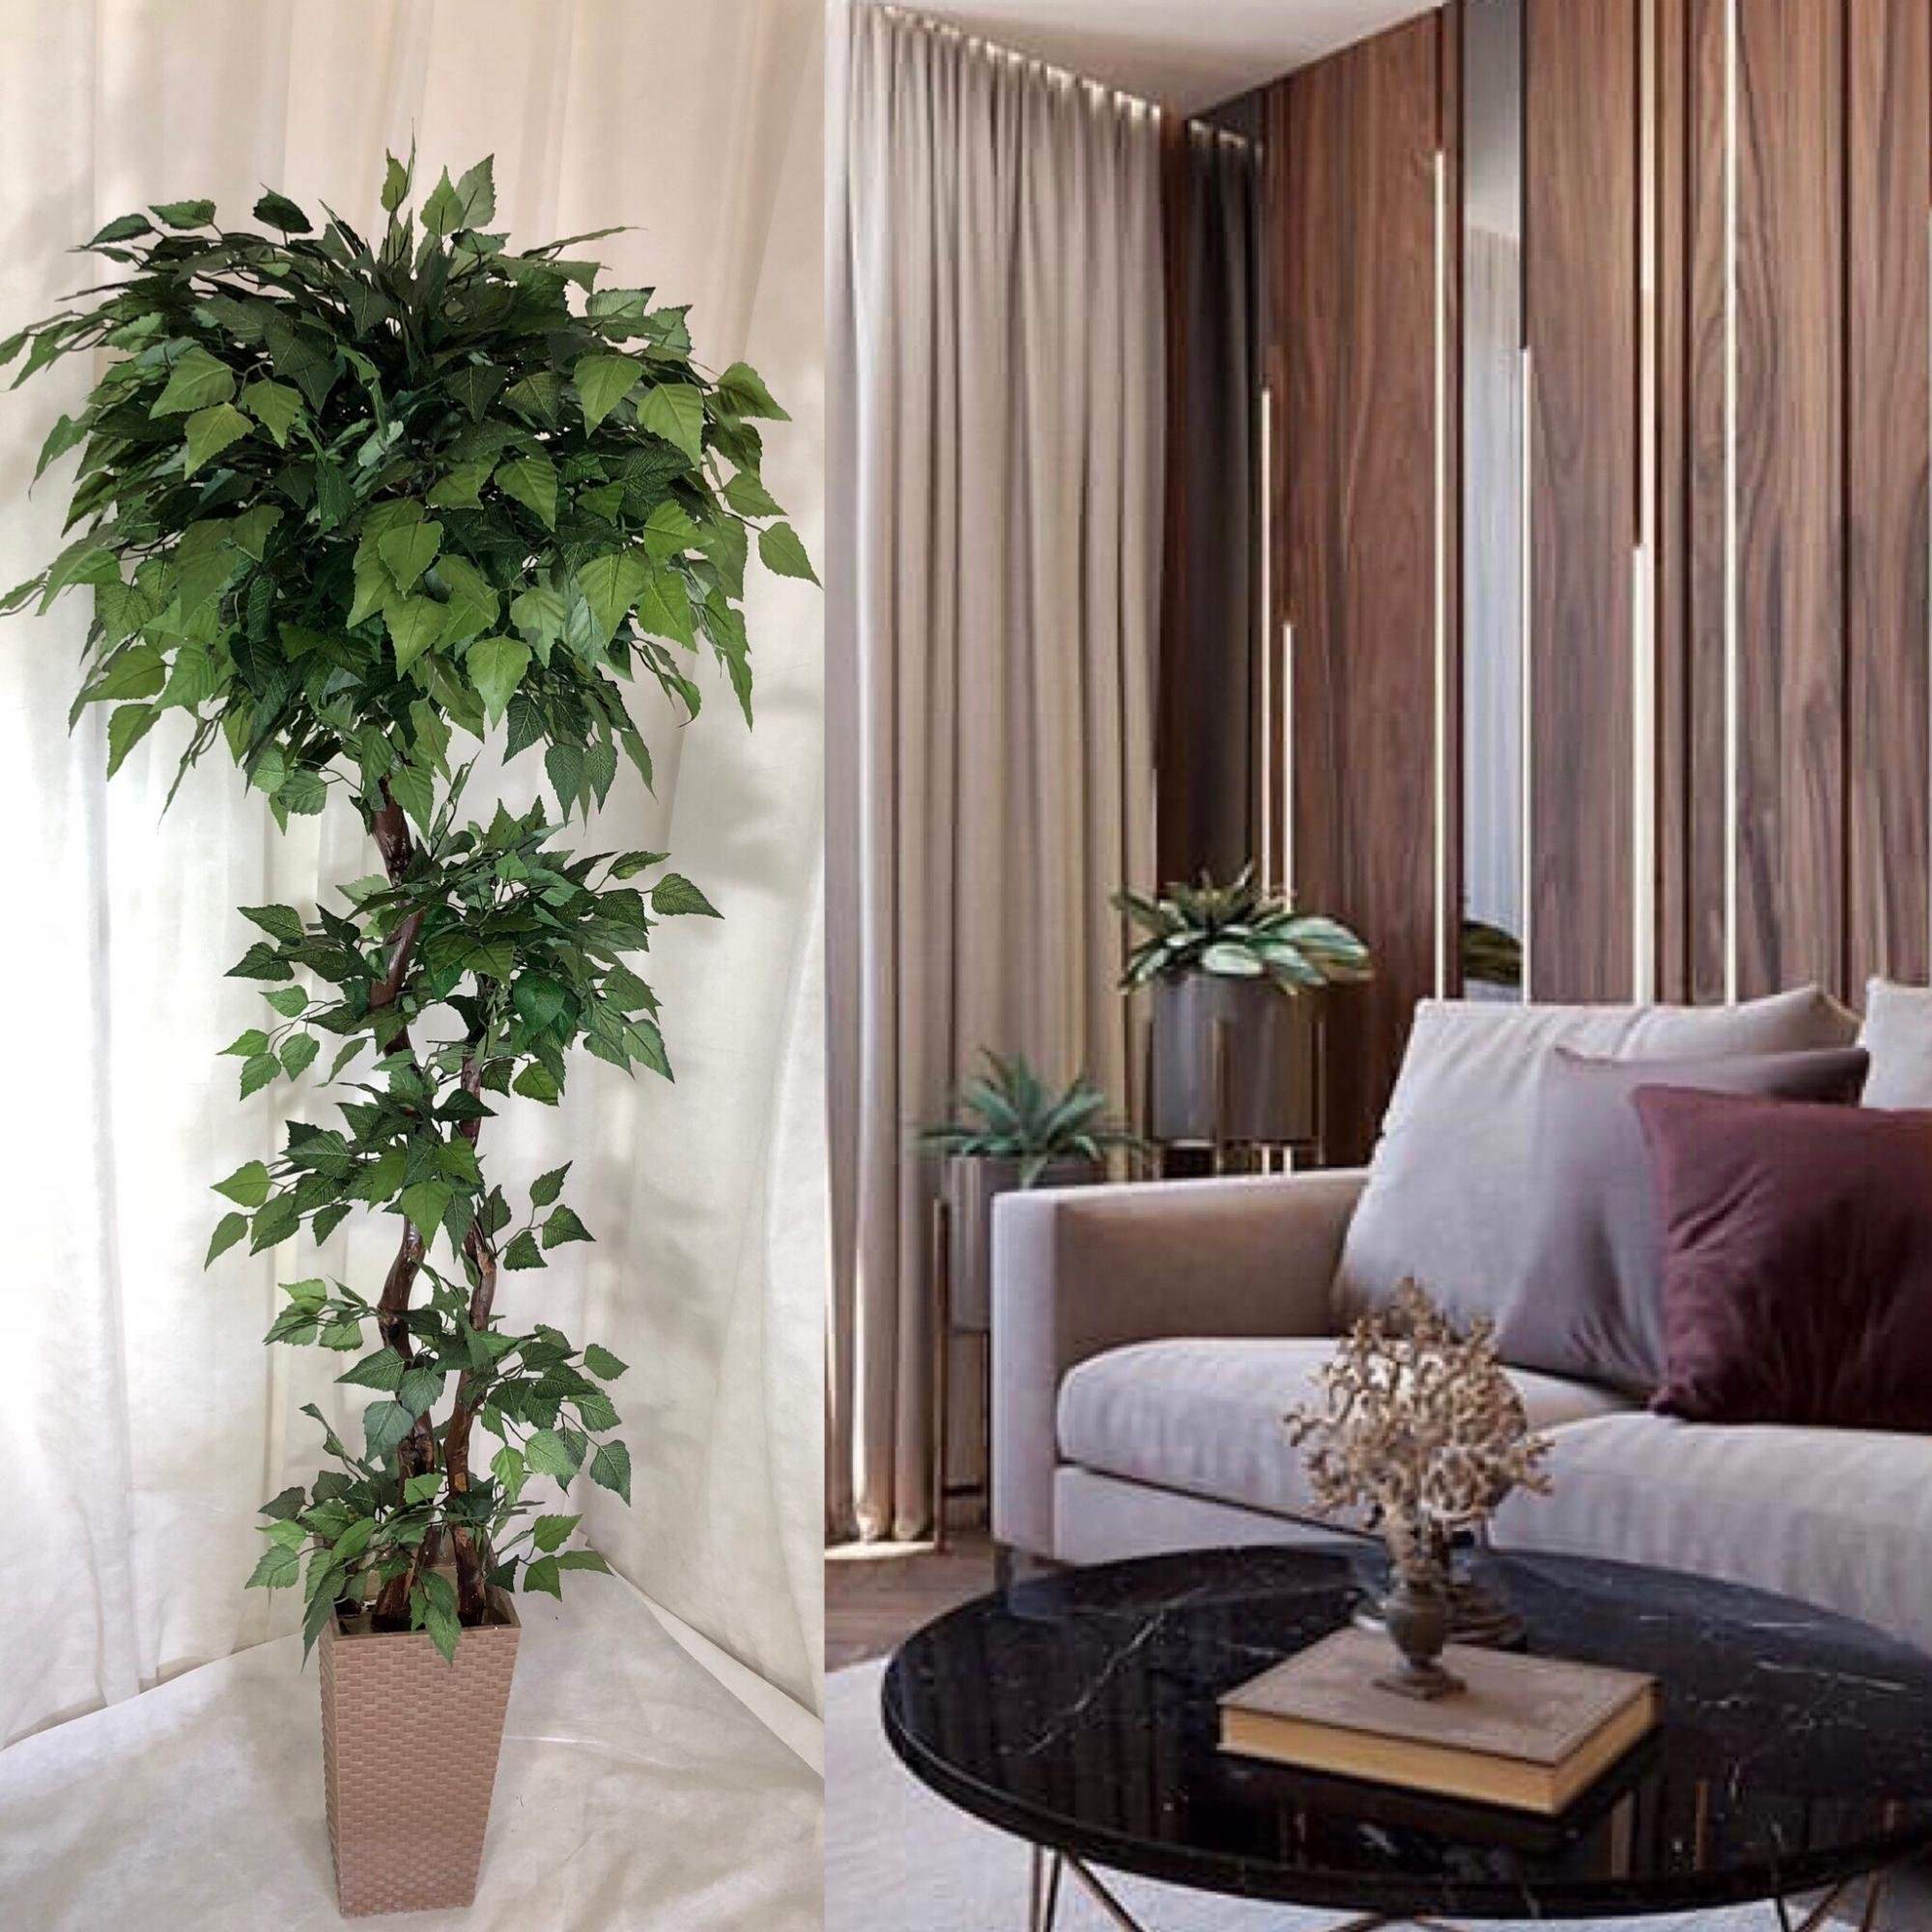 Купить комнат цветы. Искусственное дерево для интерьера. Декоративные растения для интерьера. Растения в квартире. Комнатные деревья в интерьере.